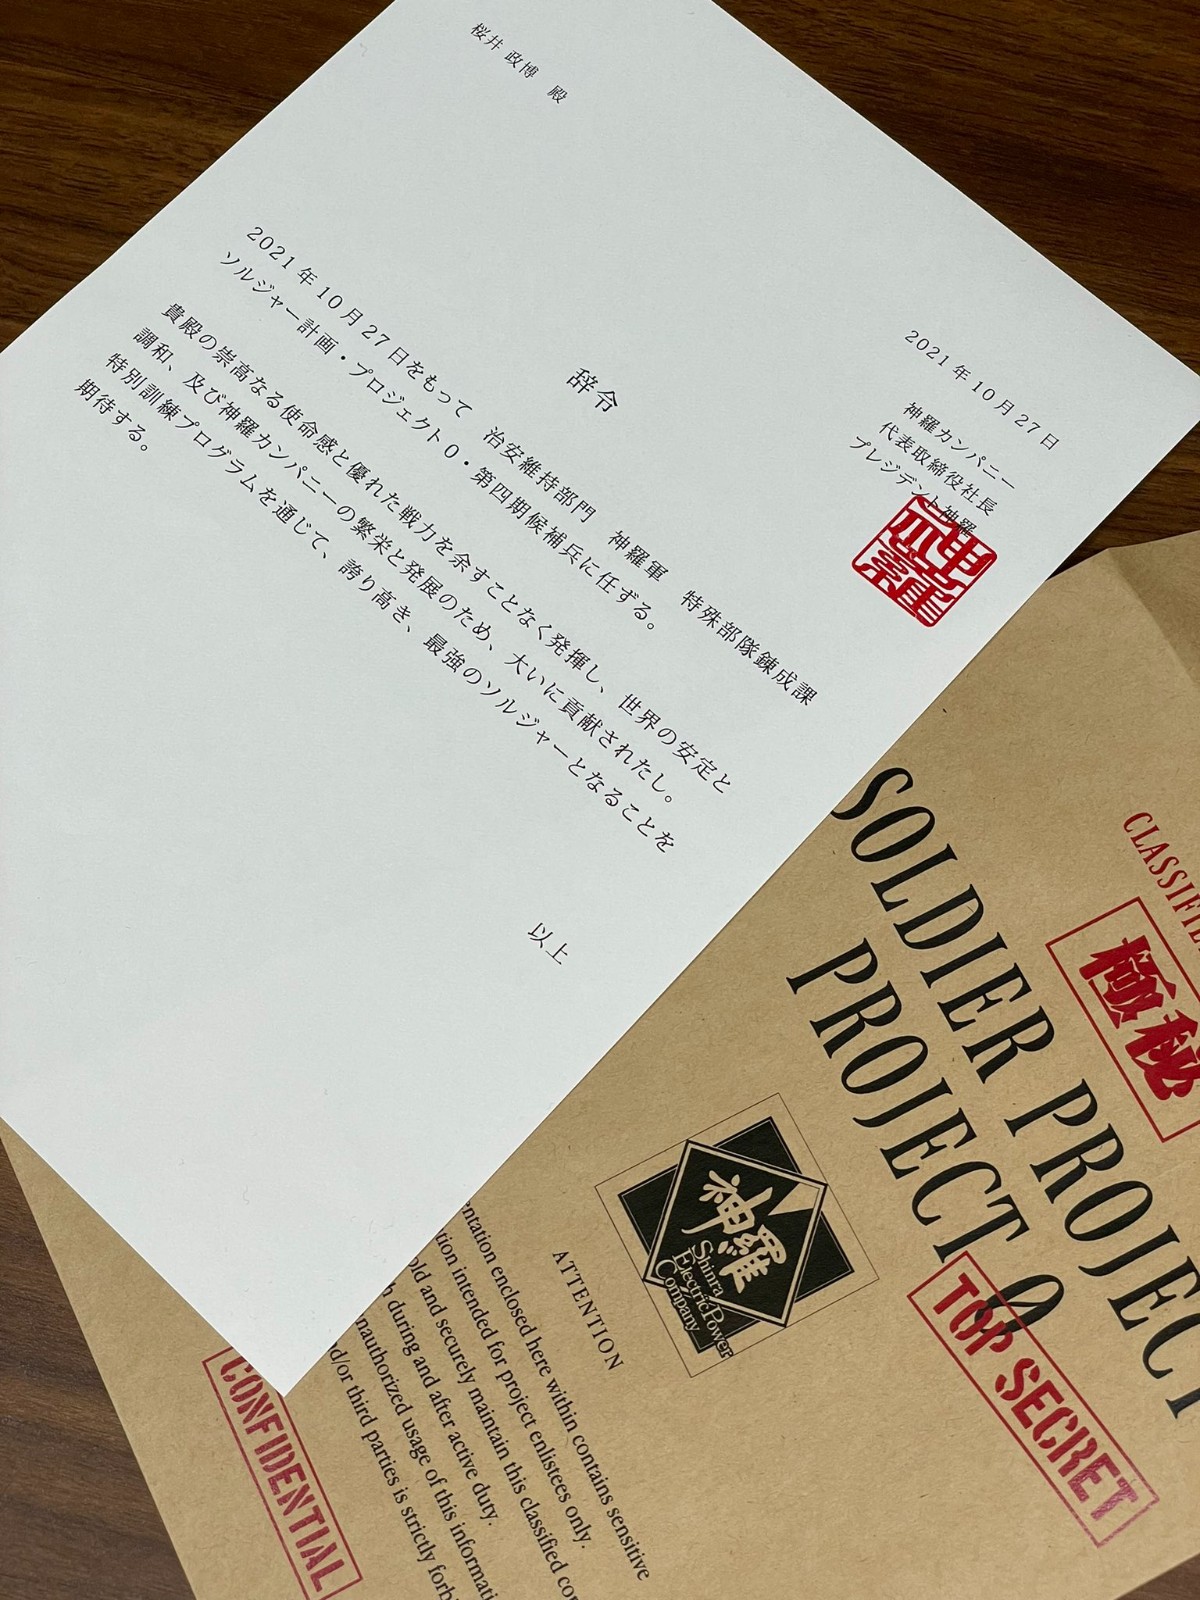 樱井政博收到FF7新手游盒子 表示调职成为士兵